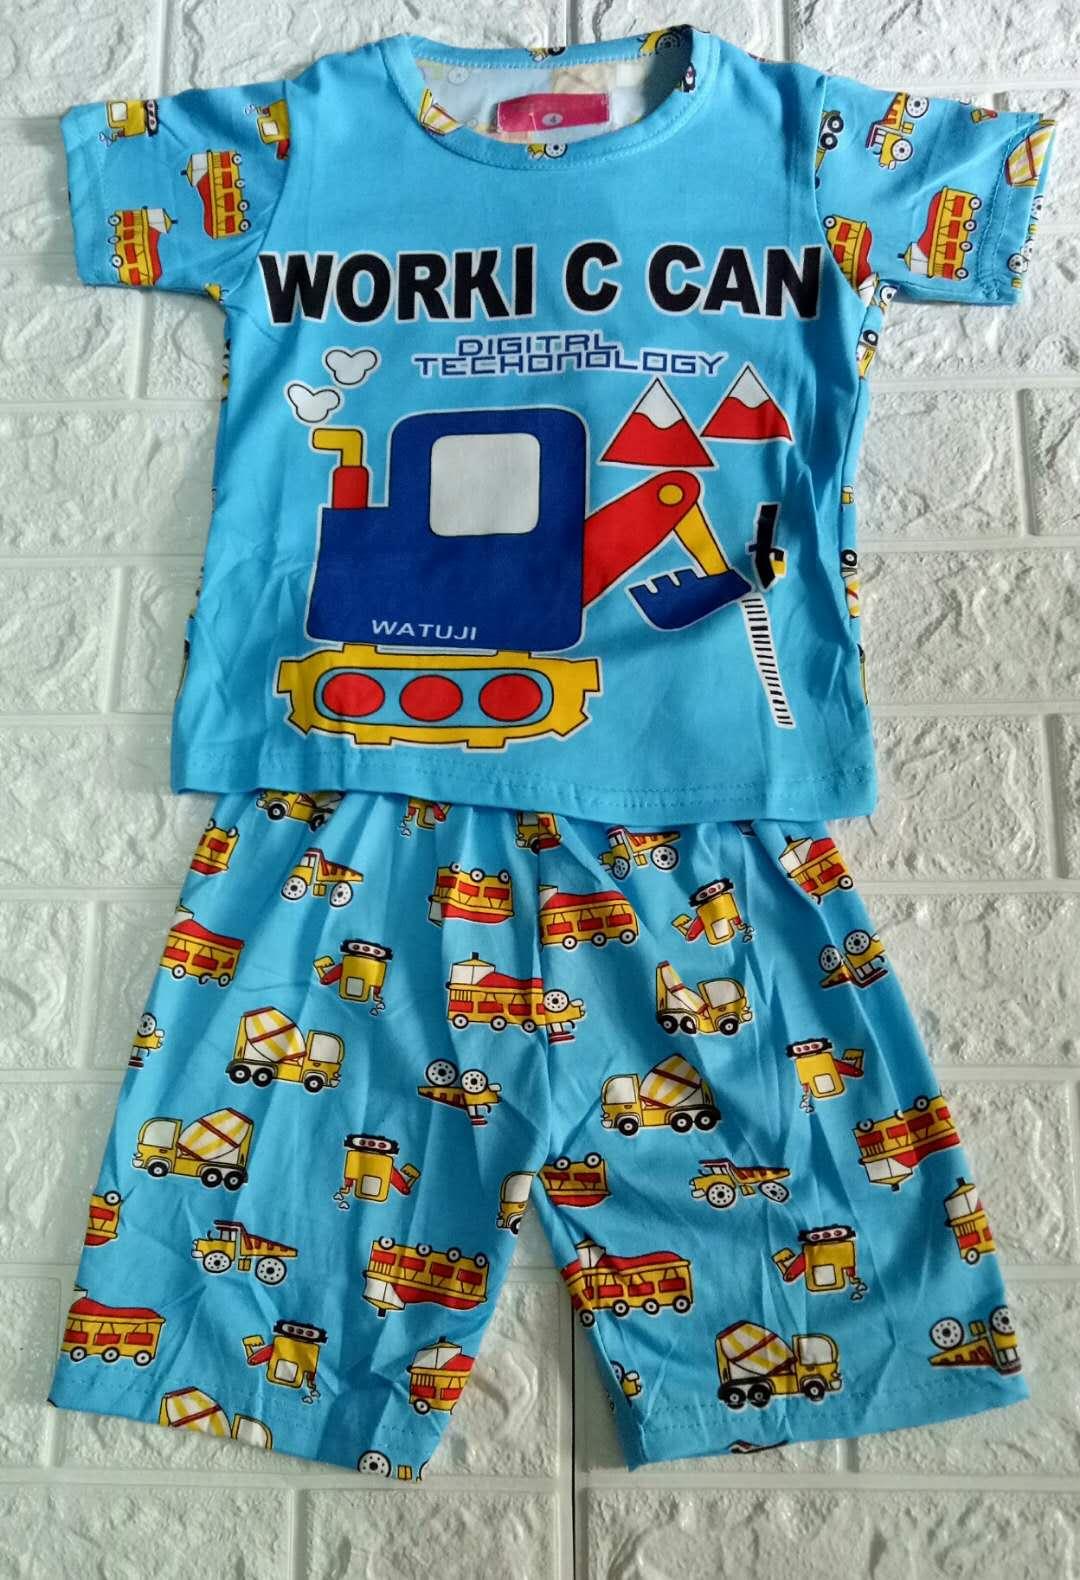 C&K ชุดนอนเด็กเล็ก-เด็กโต เนื้อผ้านิ่มสวมใส่สบาย ชุดเสื้อ+กางเกงใส่นอนใส่เล่นตามต้องการNo.1008